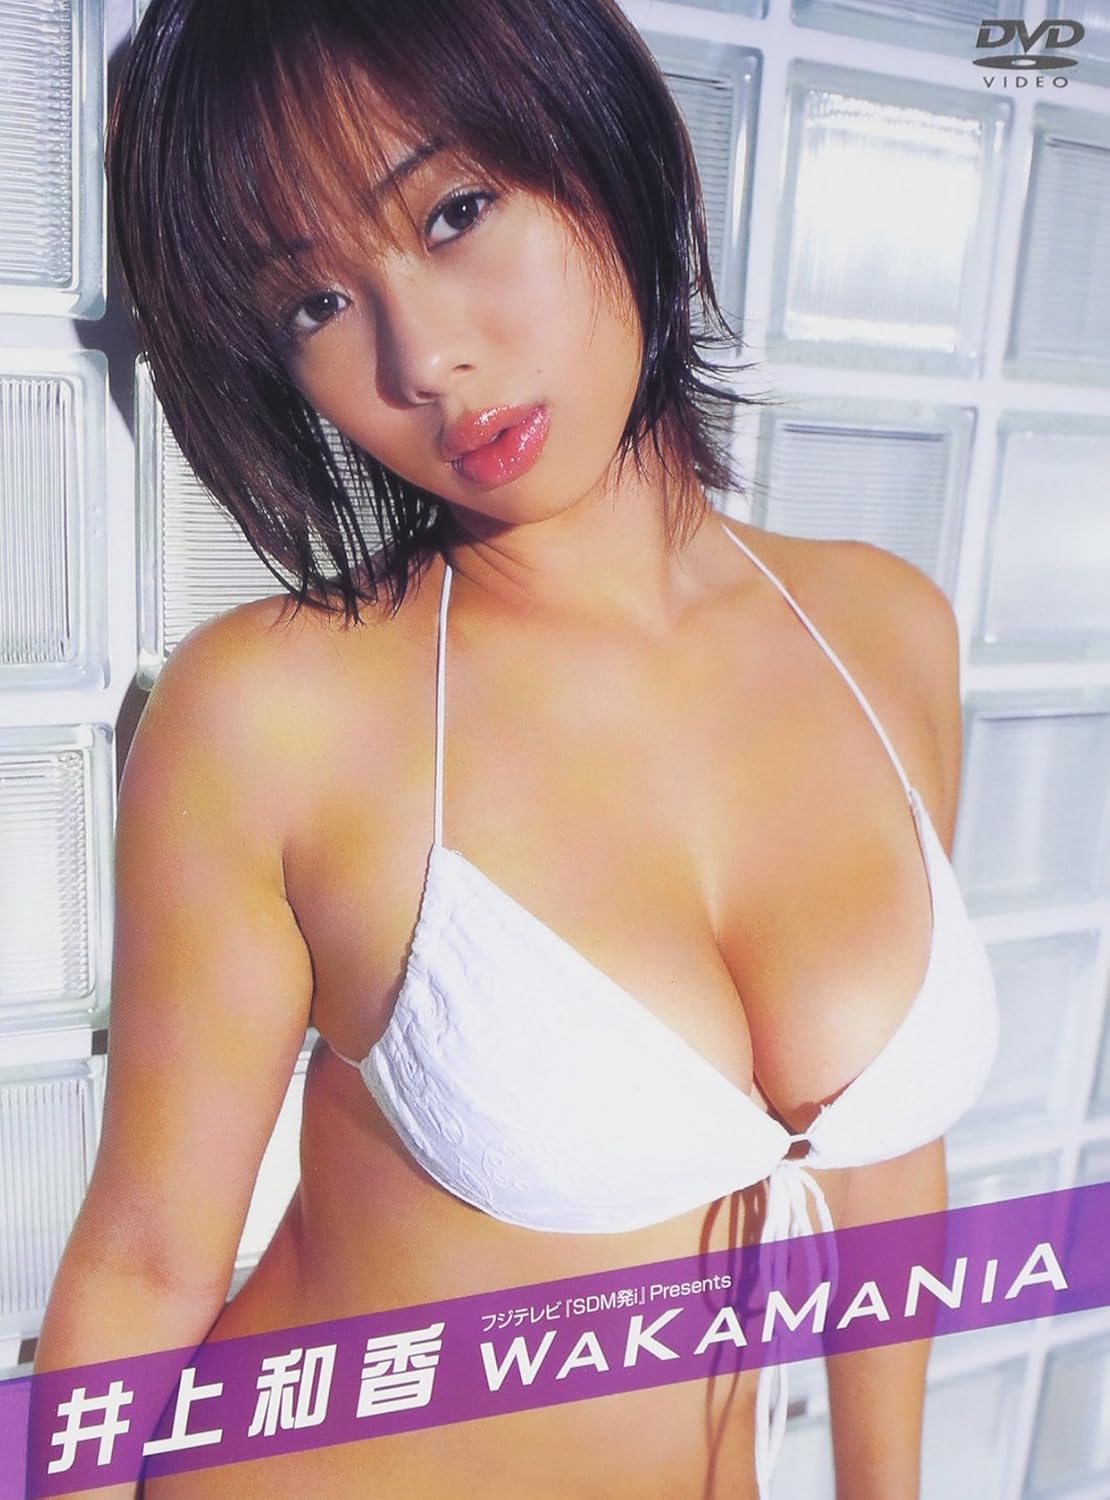 Inoue waka japanese girl